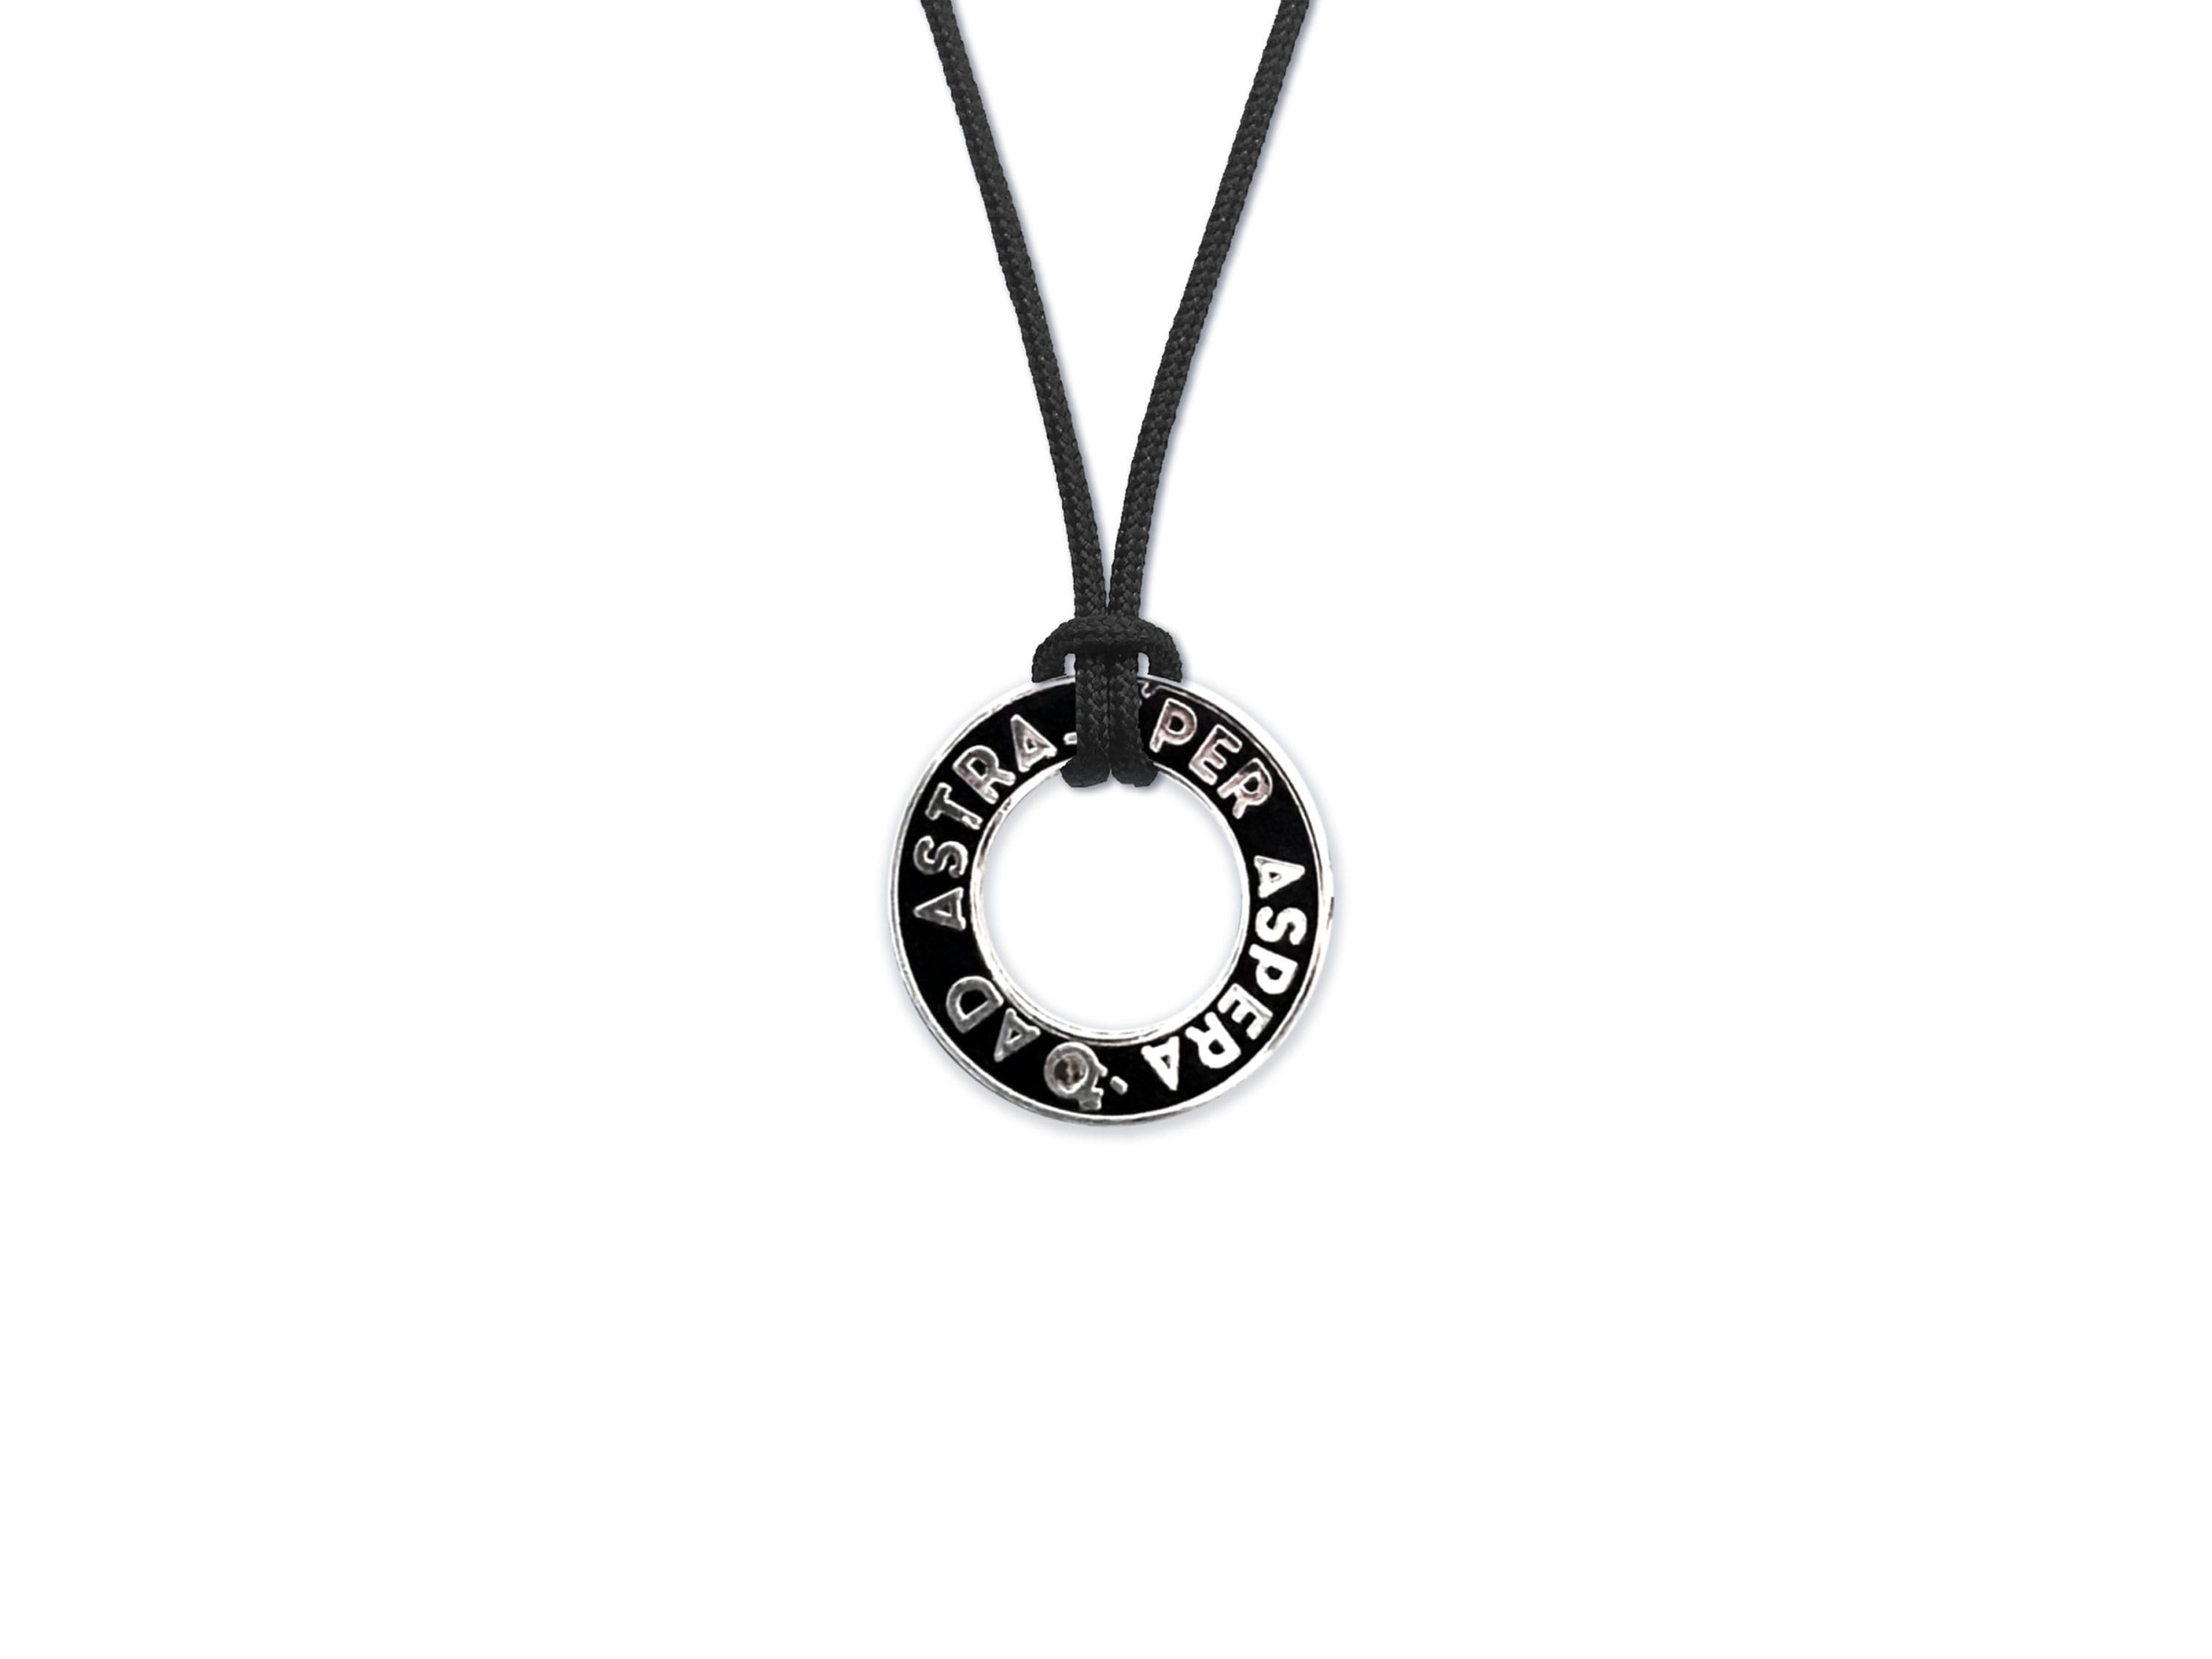 Ad Astra Meteorite Dust Necklace - Per Aspera Men's / Women's Black Astronomy Pendant - Minimalist / Futuristic Scifi Space Jewelry